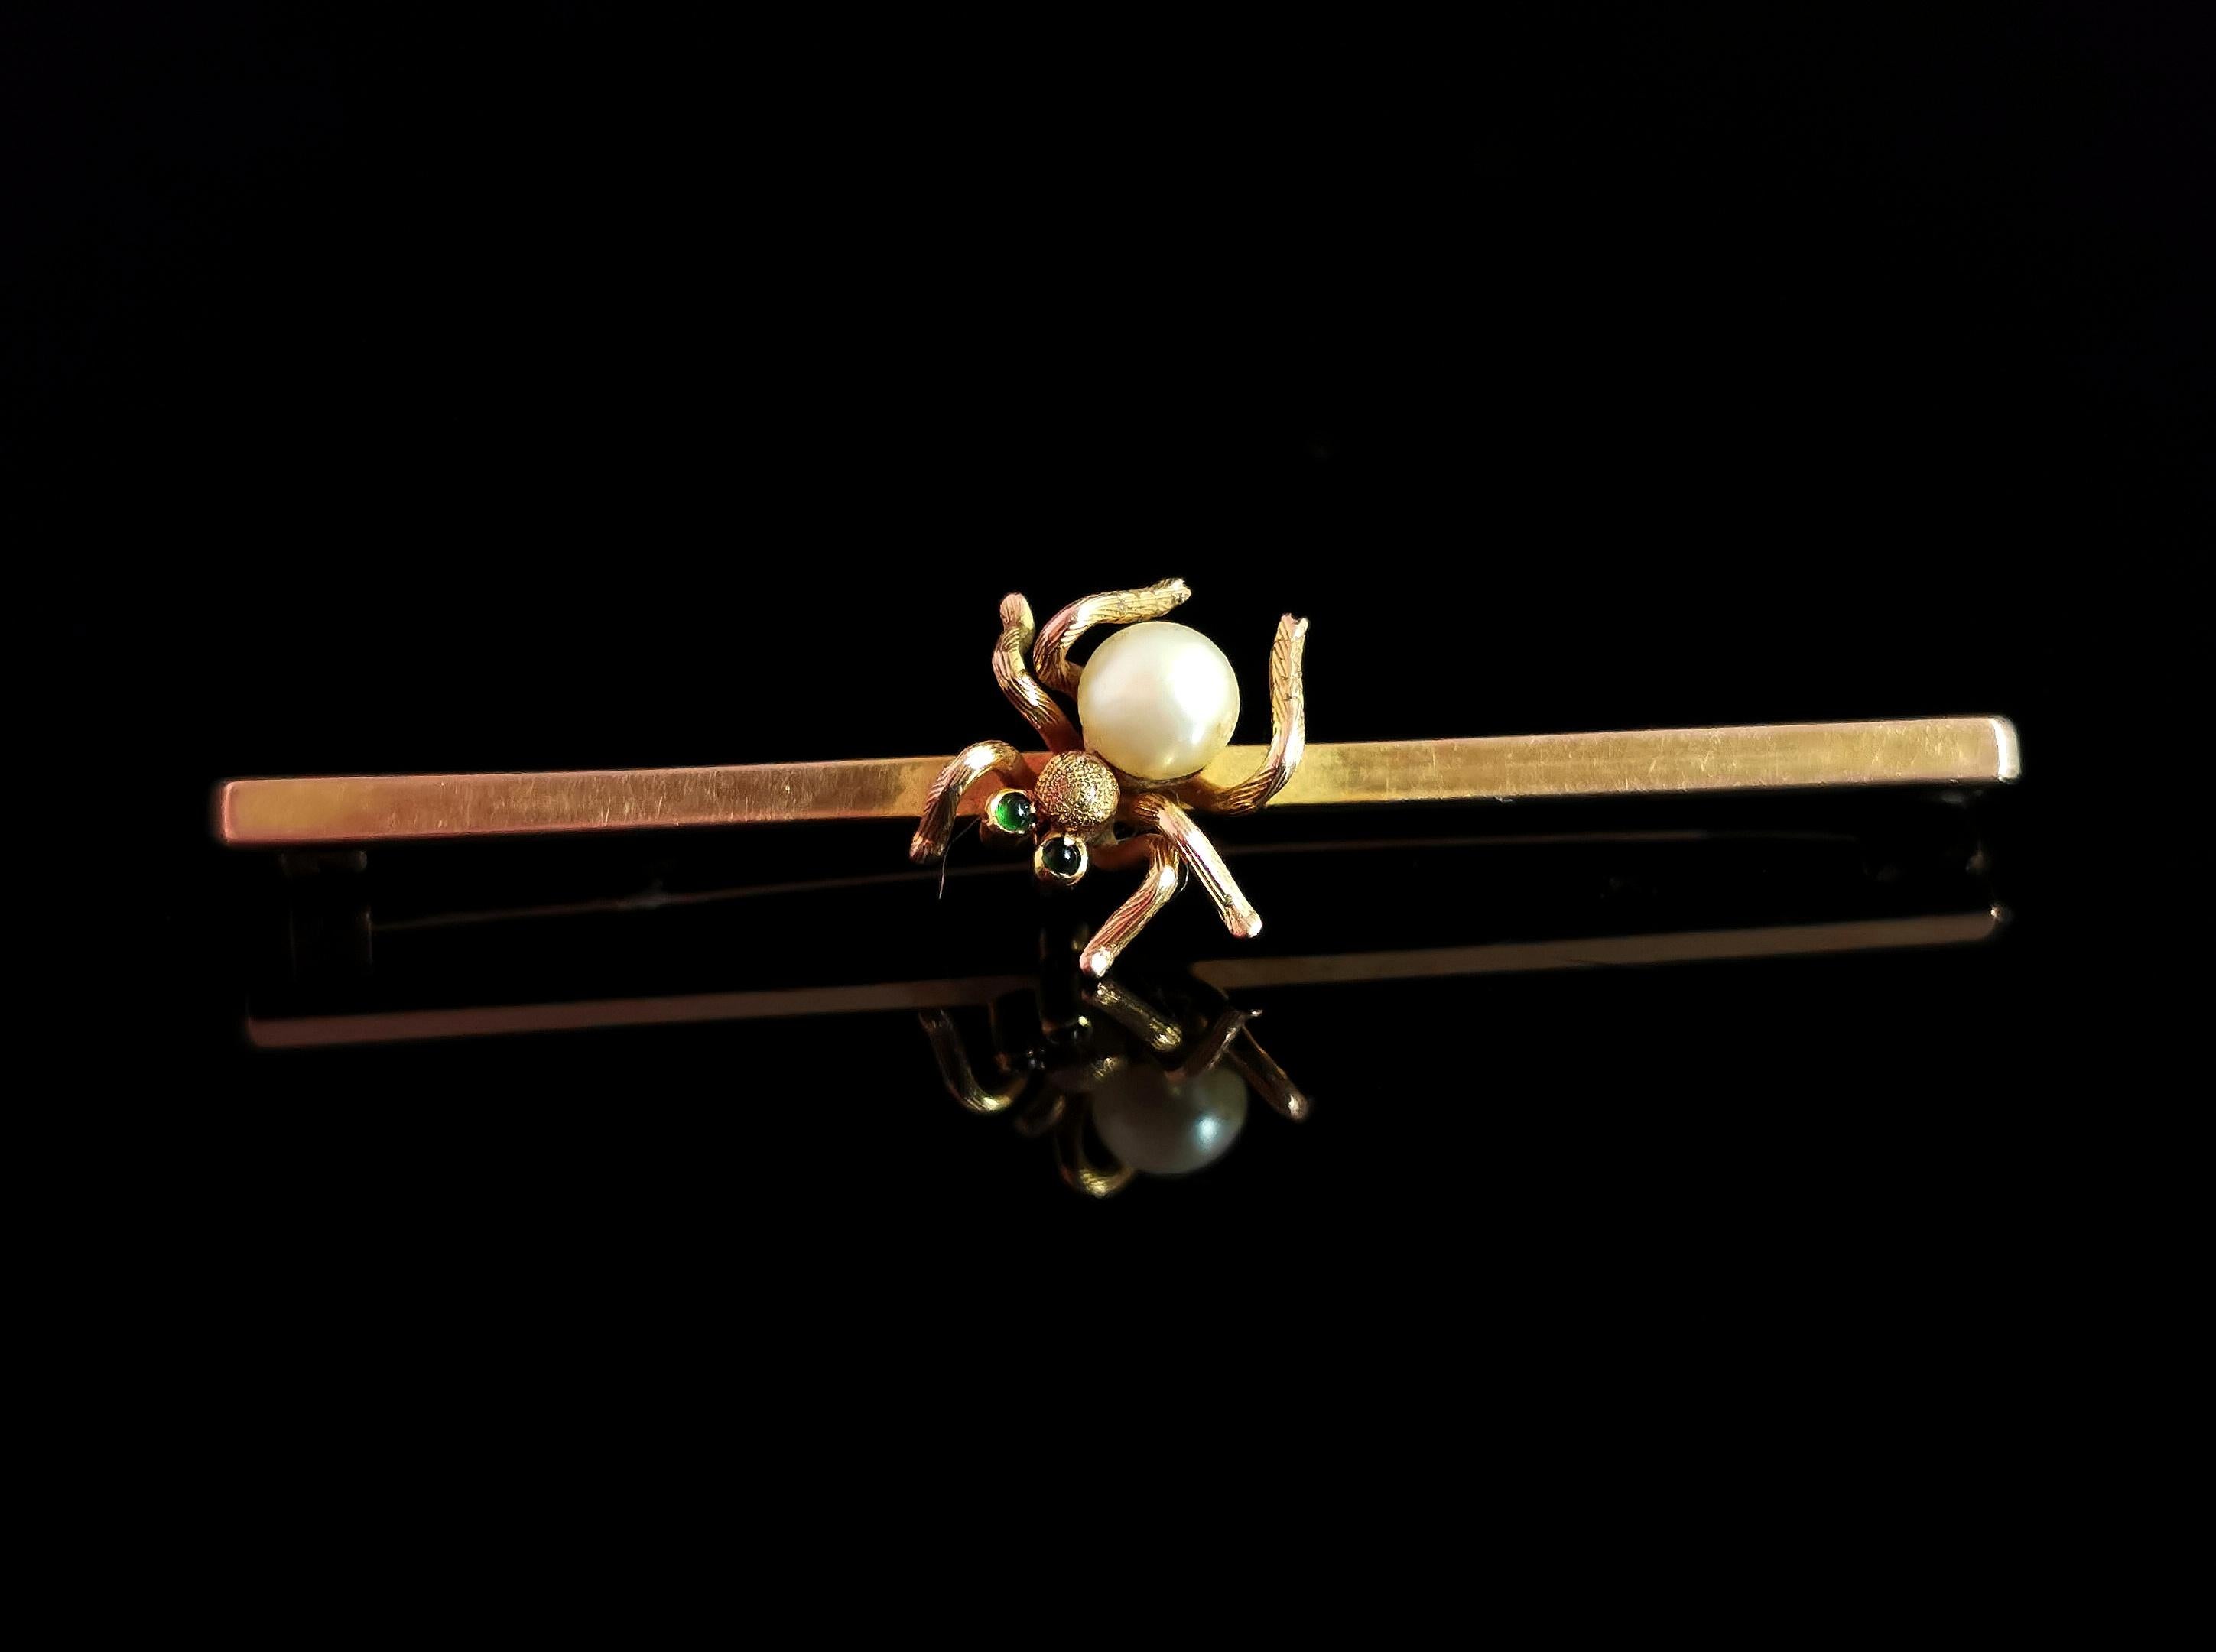 Magnifique broche araignée en or 9ct, datant du début de l'époque édouardienne.

Le corps est fait d'une belle perle de culture aux tons froids et les yeux sont sertis de minuscules cabochons de grenat démantoïde.

Sertie dans de l'or jaune 9ct et